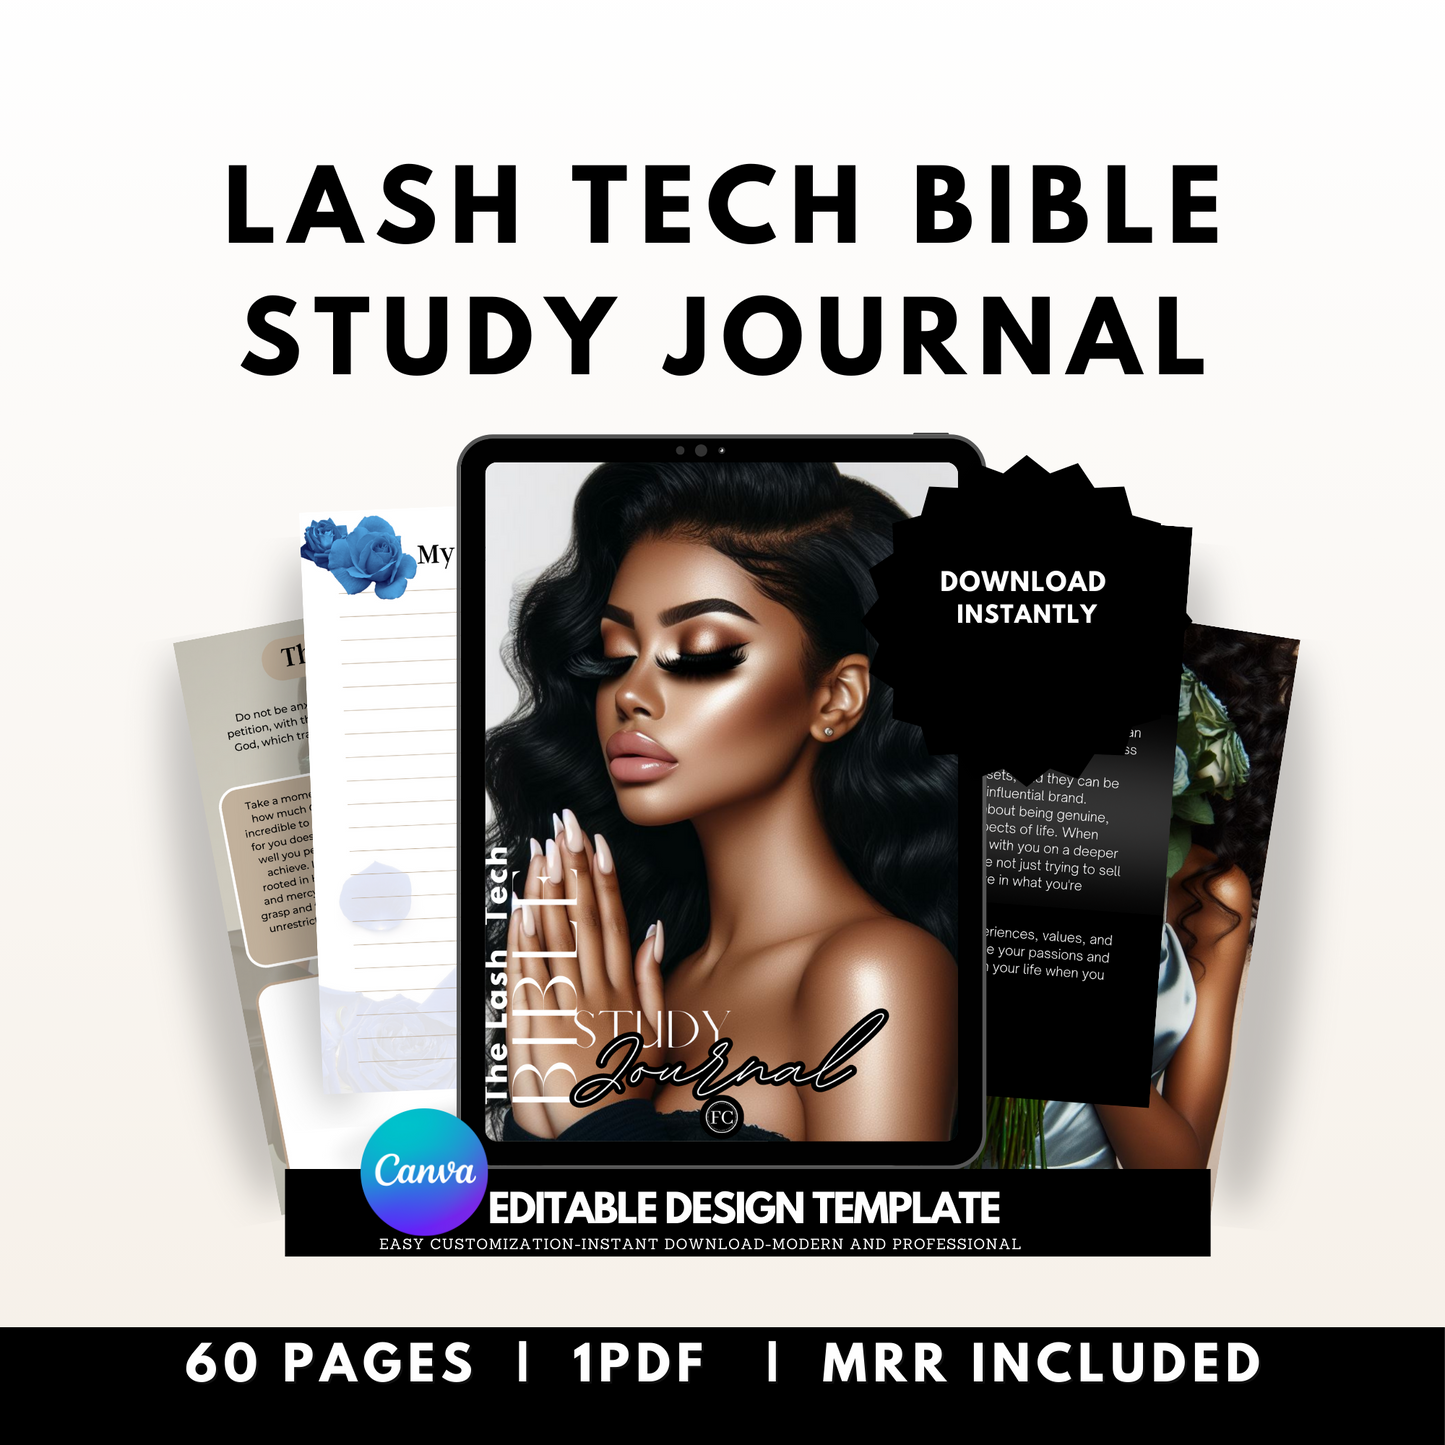 Lash Tech Bible Study Journal